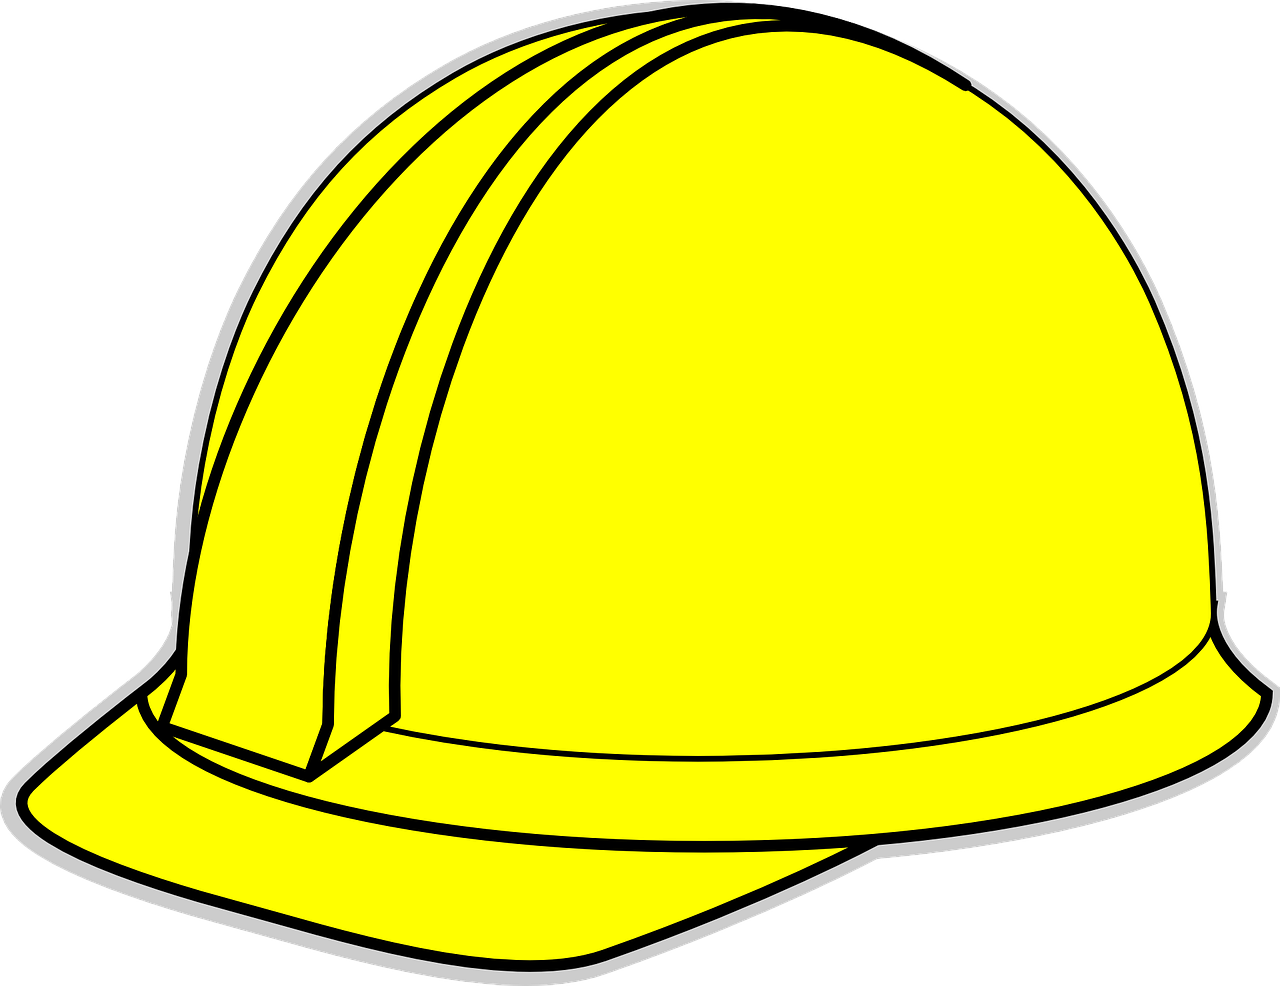 Engineer Helmet PNG Background Image